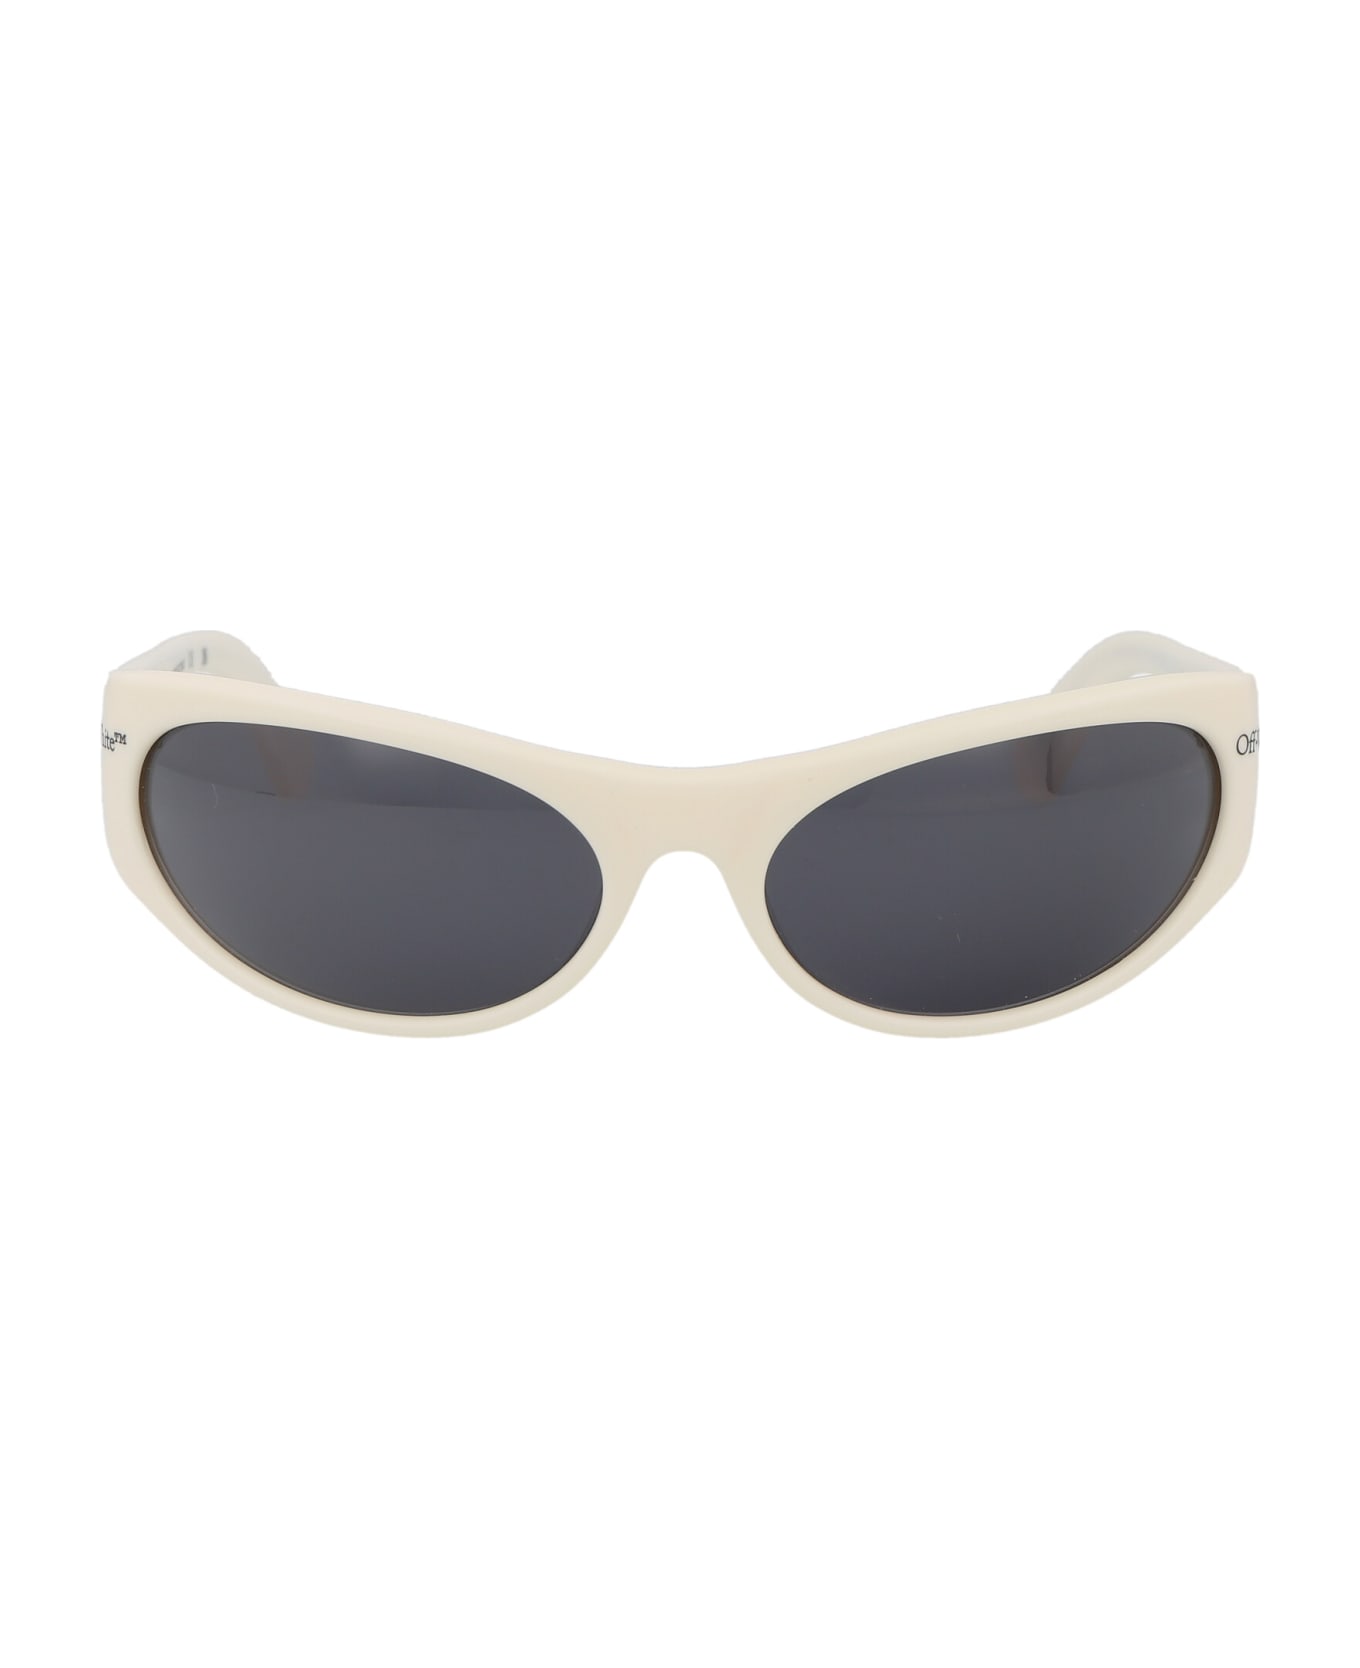 Off-White Napoli Sunglasses - 0107 WHITE